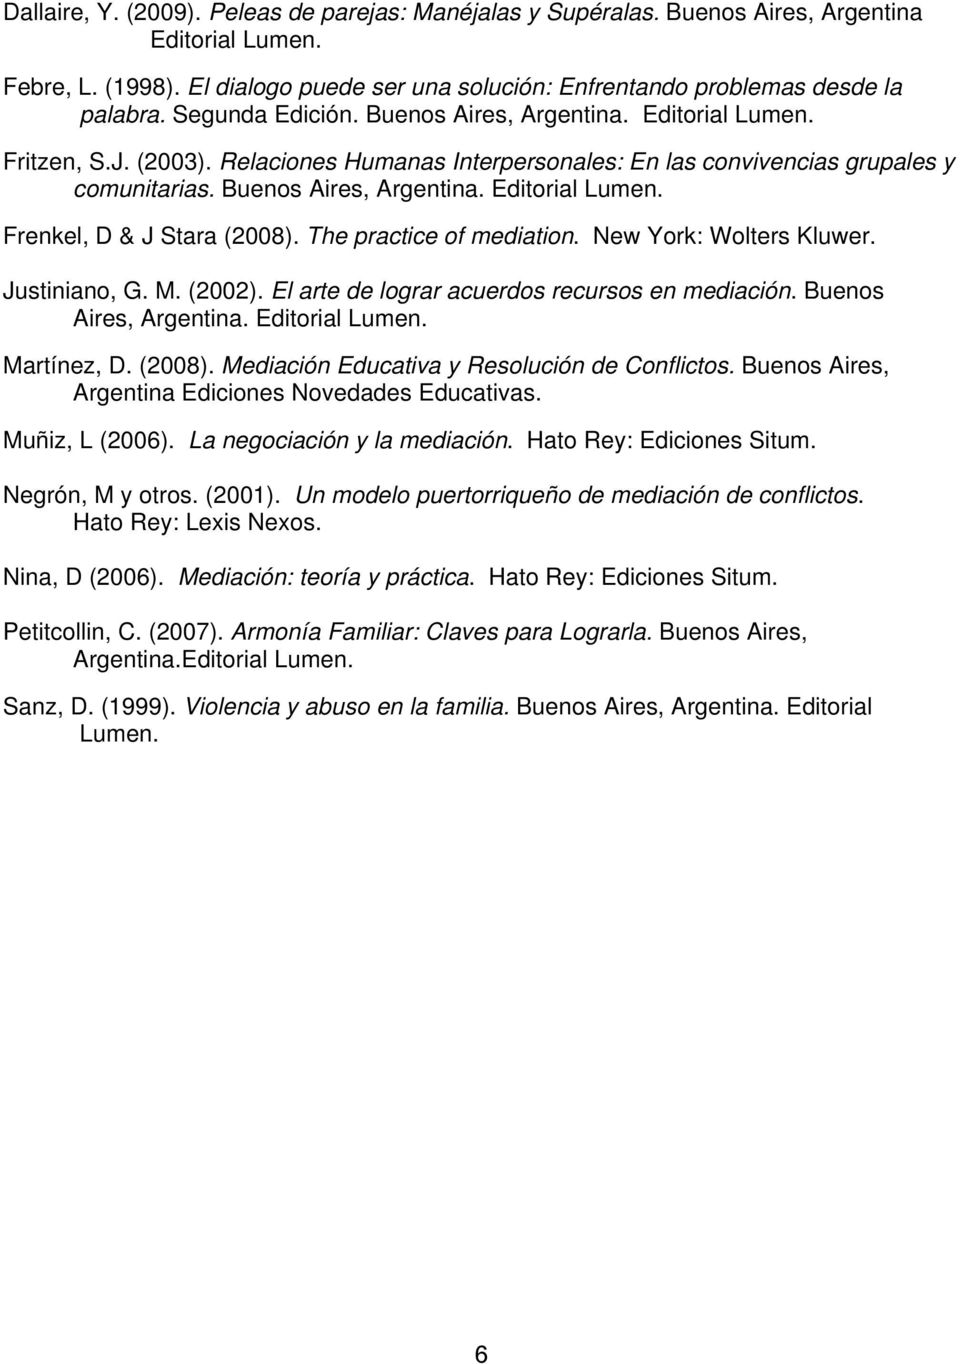 The practice of mediation. New York: Wolters Kluwer. Justiniano, G. M. (2002). El arte de lograr acuerdos recursos en mediación. Buenos Aires, Argentina. Editorial Lumen. Martínez, D. (2008).